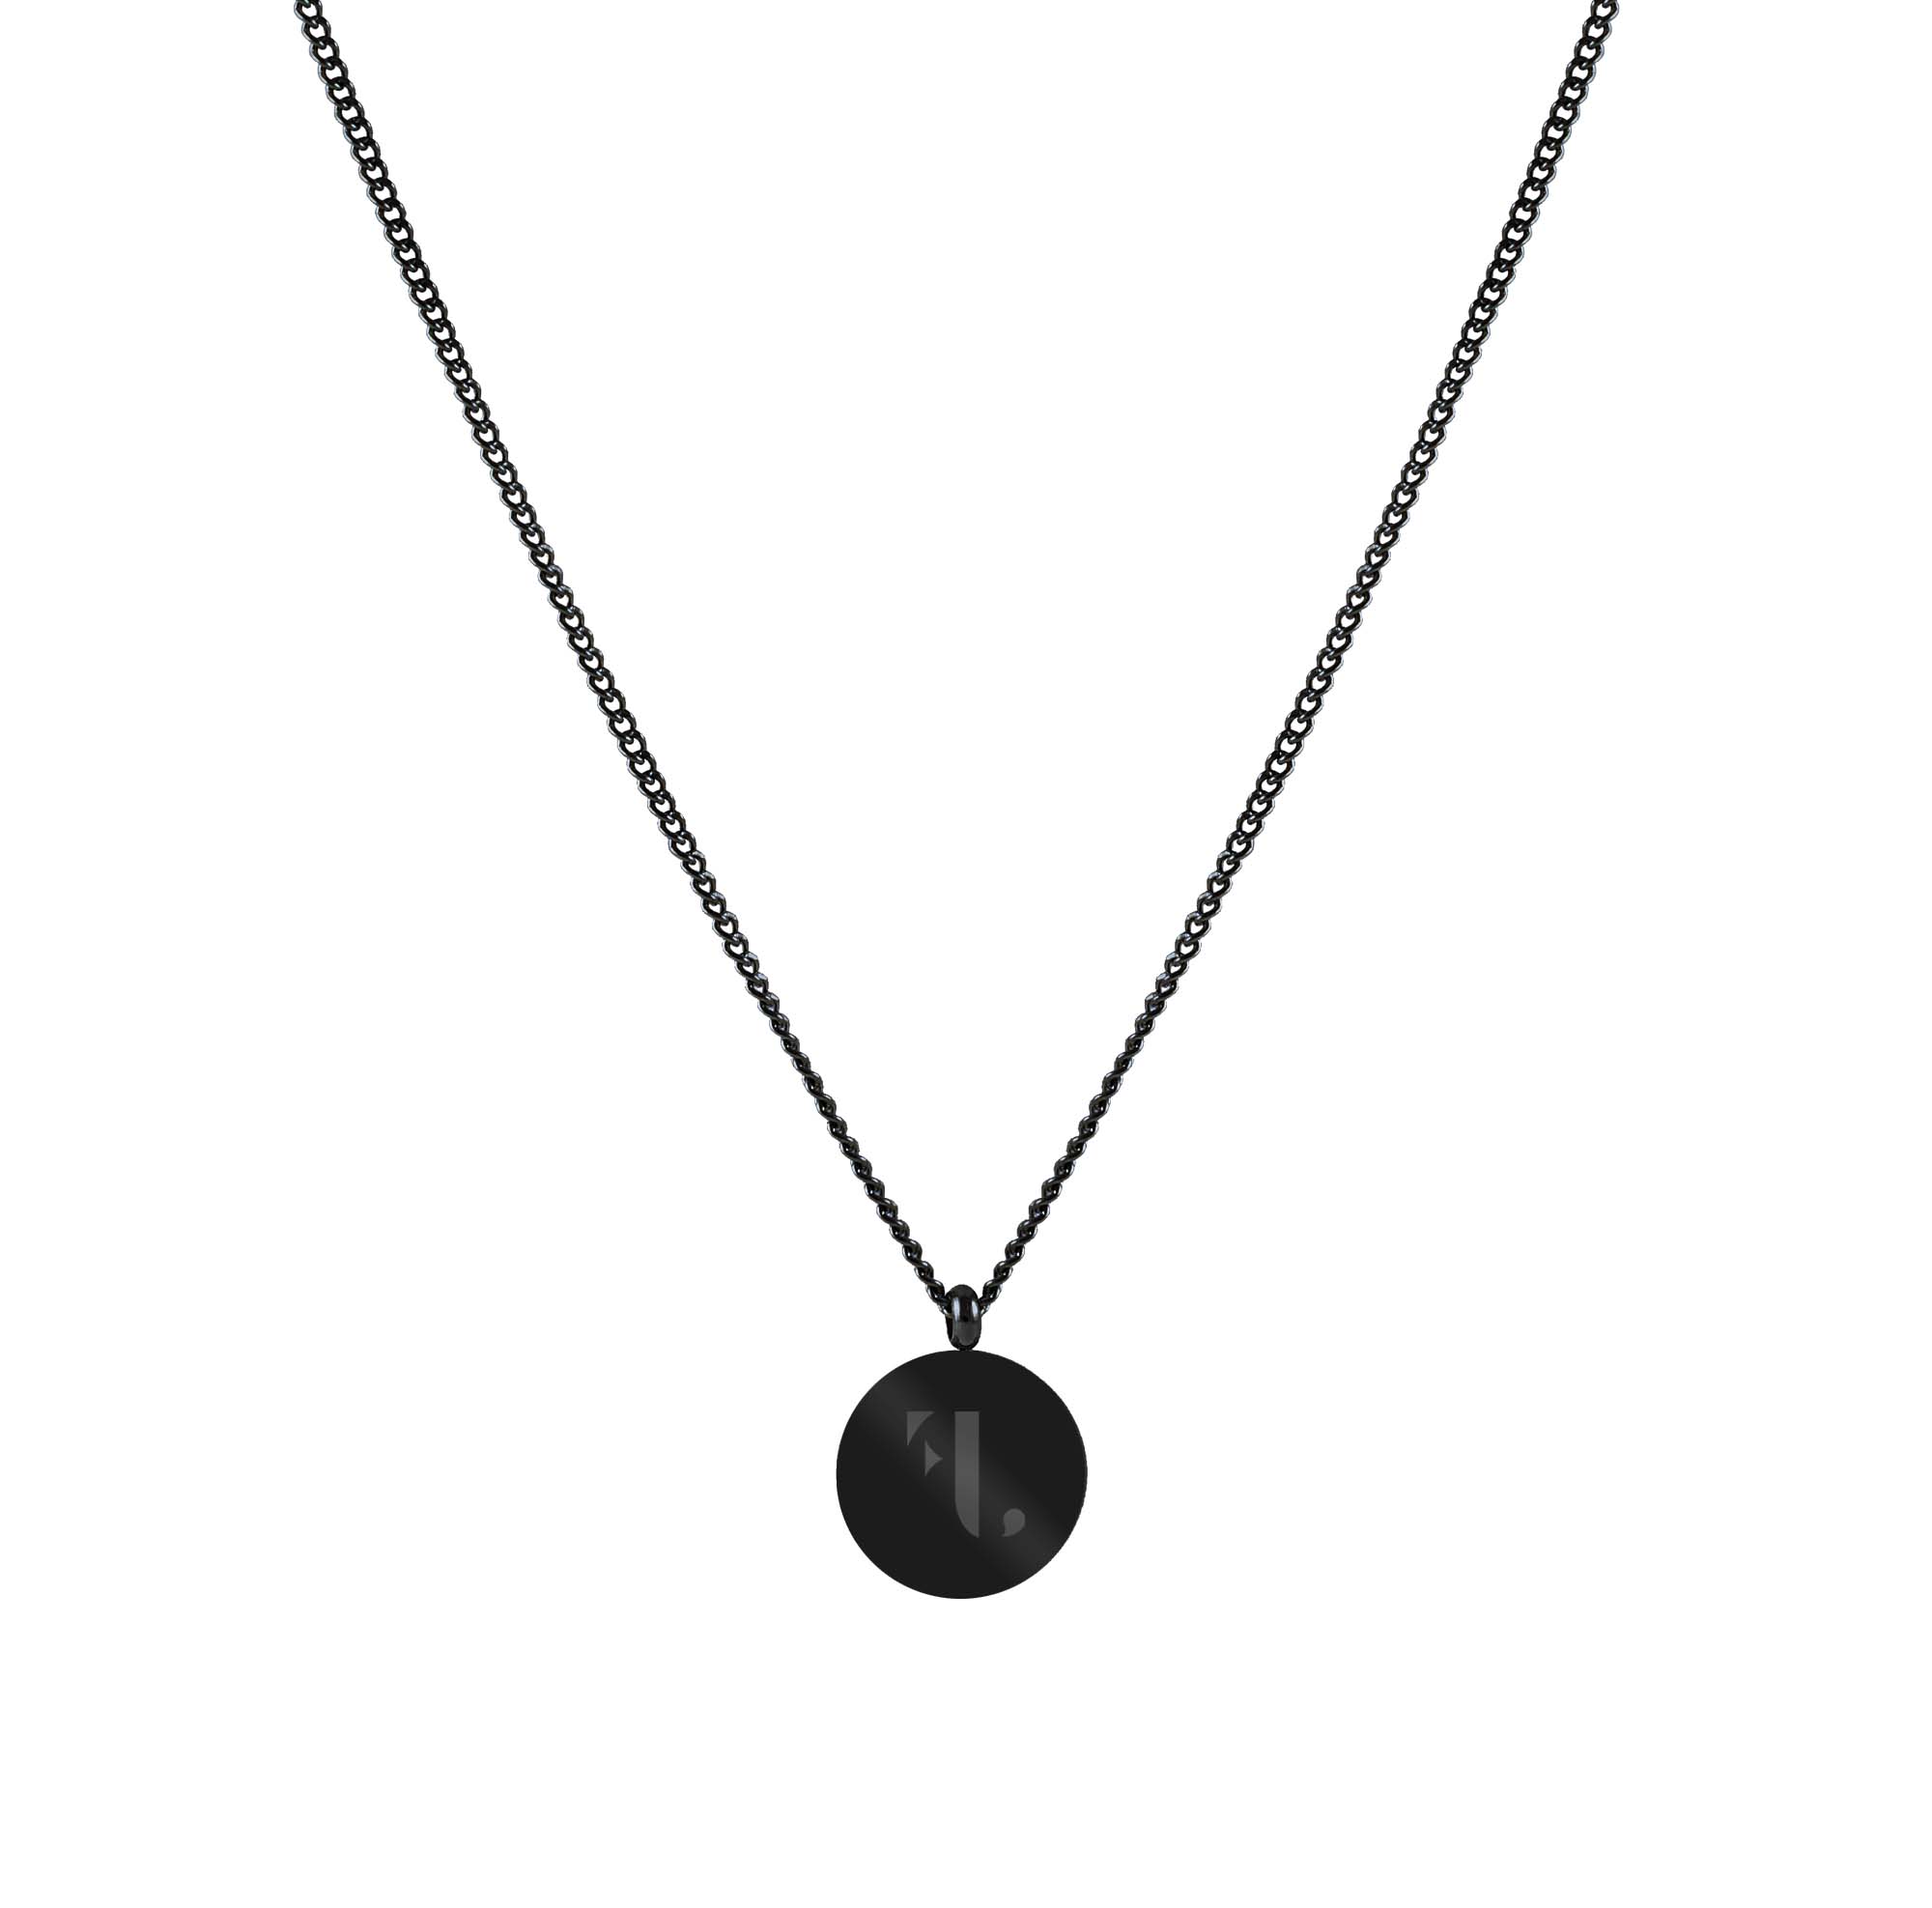 FJ Watches elbe necklace cuban link chain black men 2mm 45cm 55cm pendant round minimalist